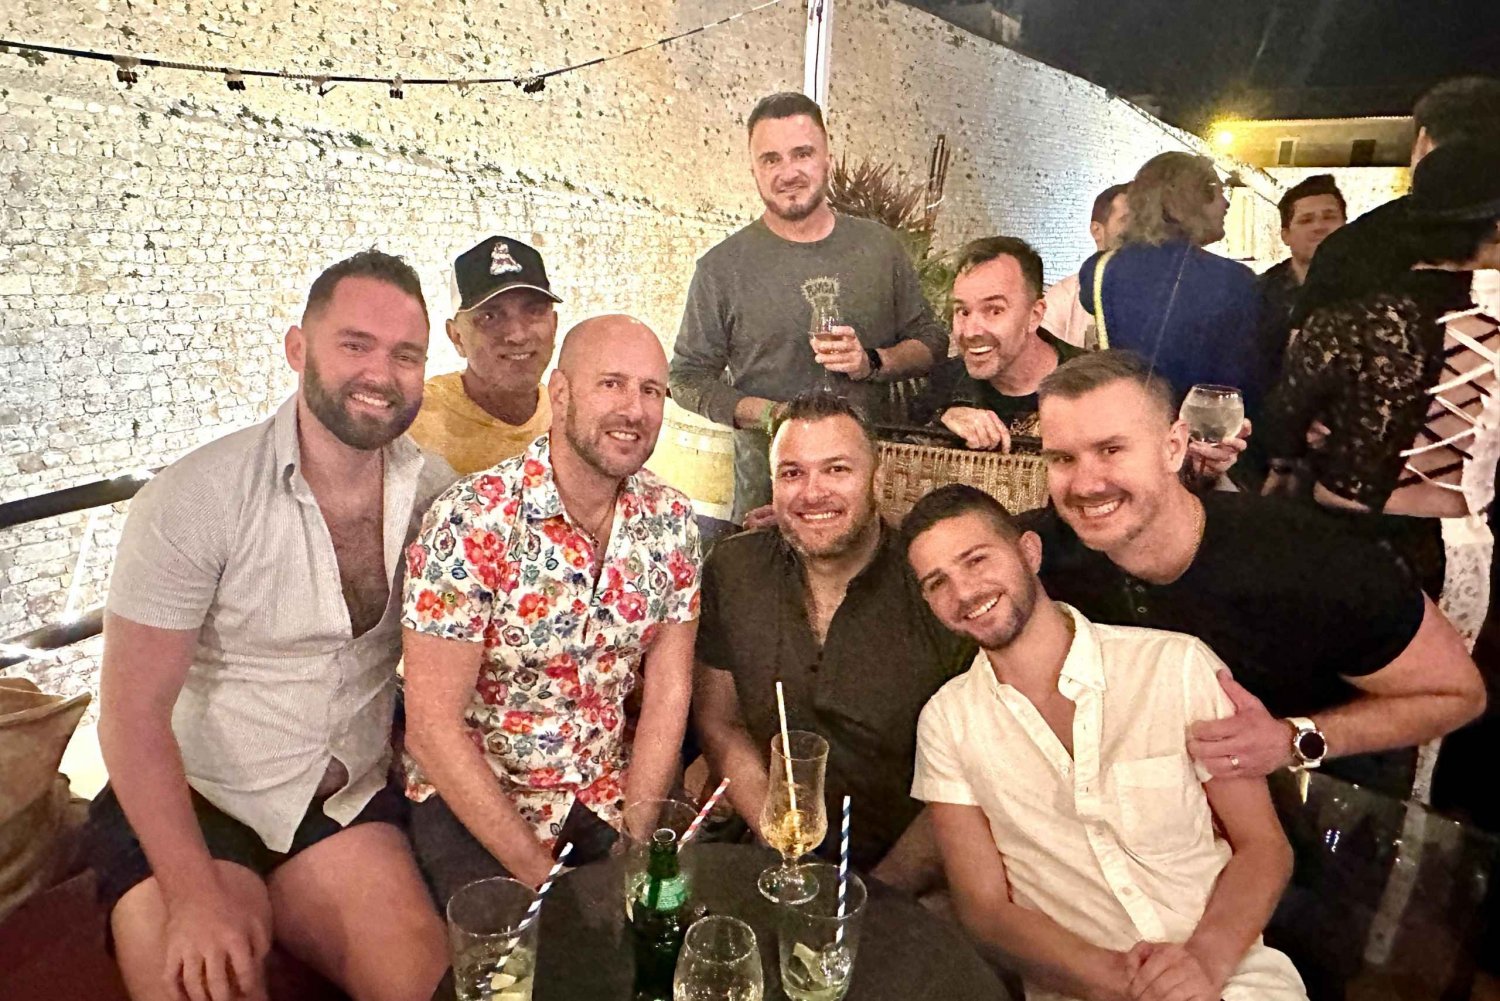 Visite de la vie nocturne gay à Madrid